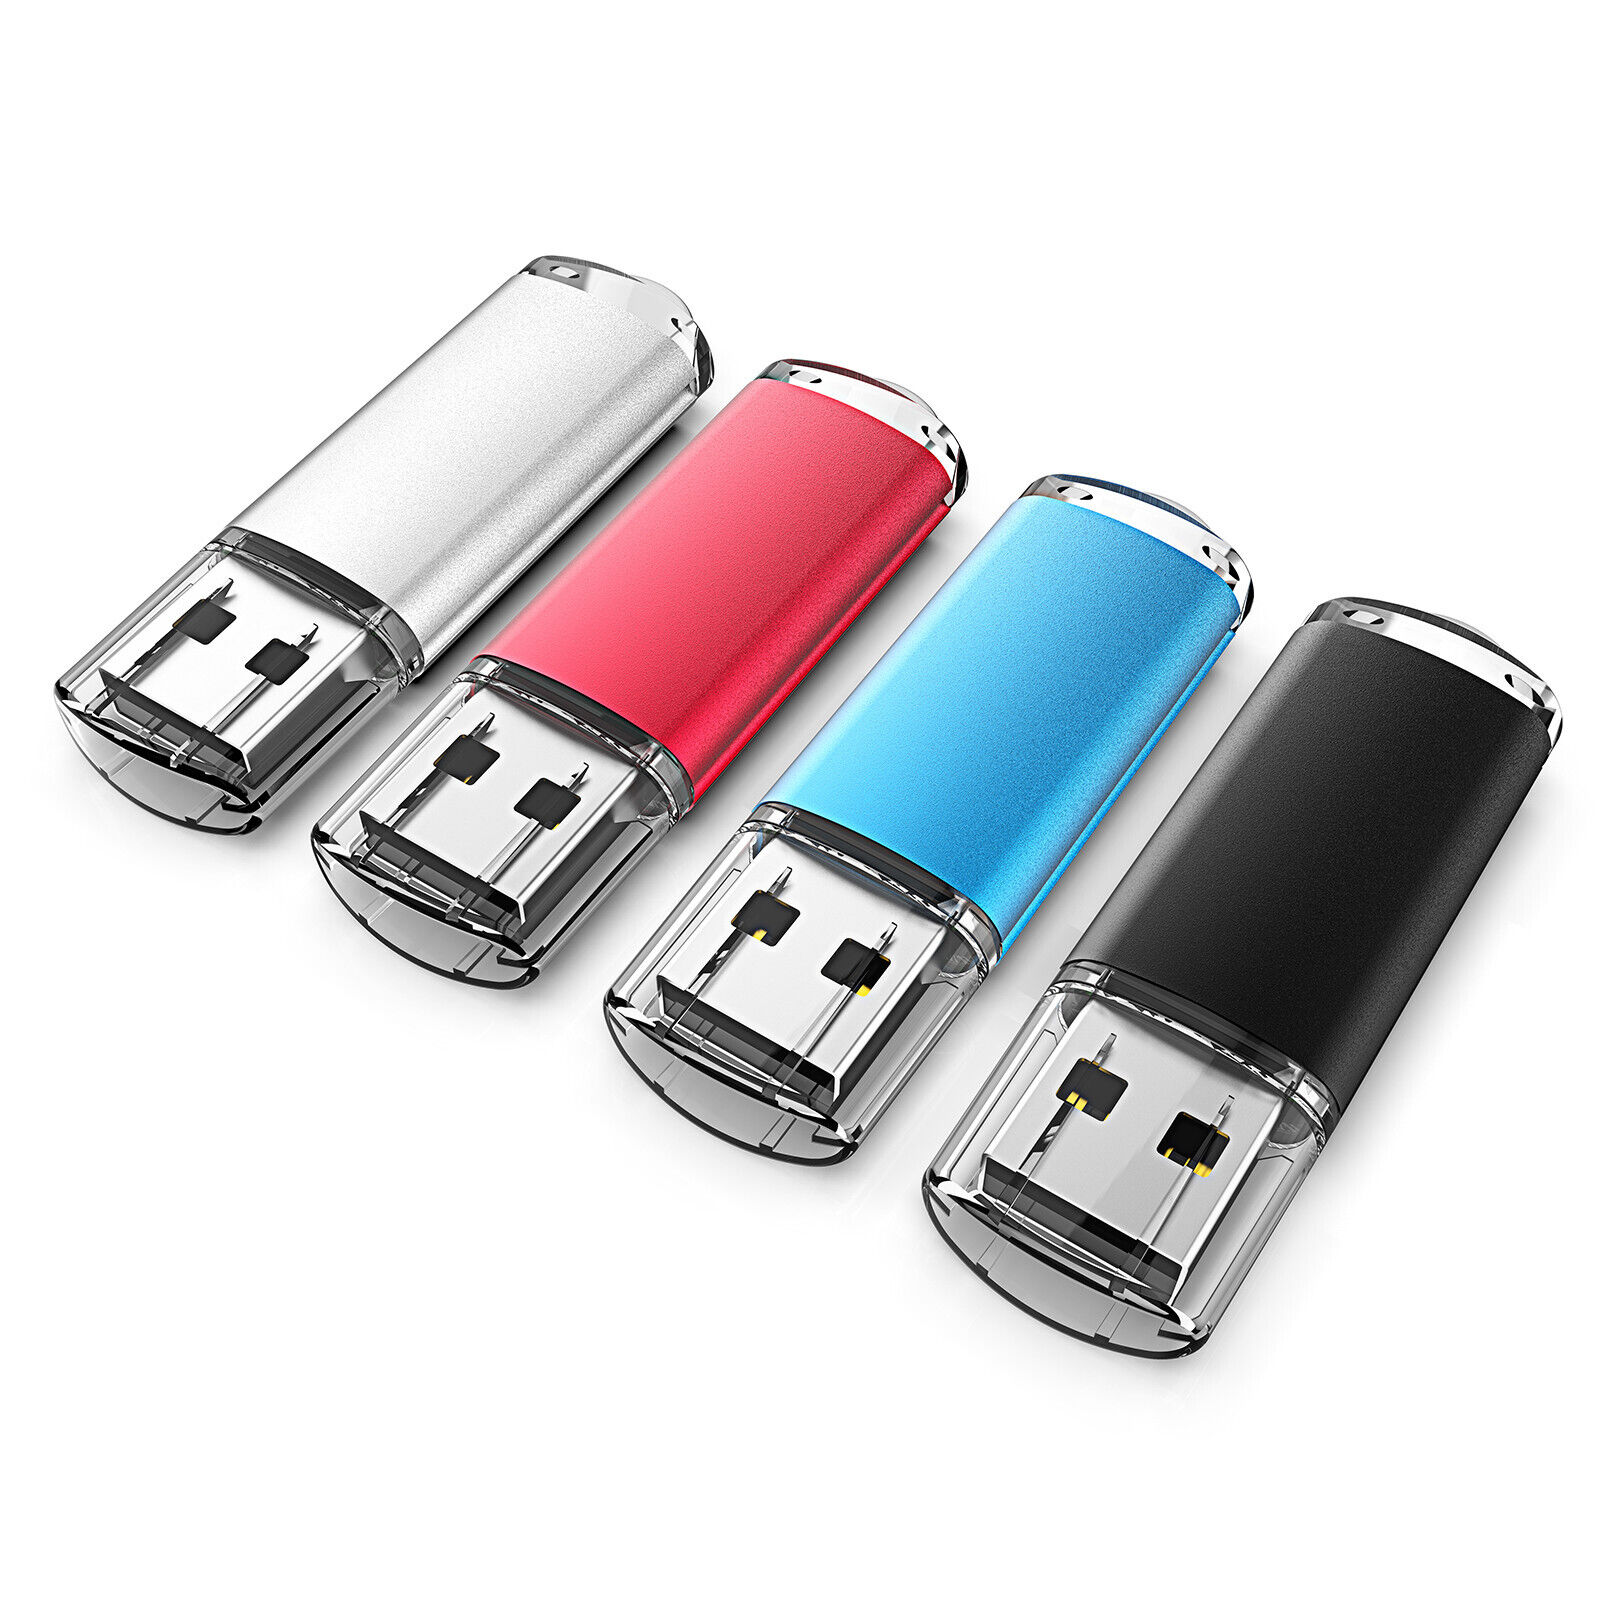 LOT 4X 8X 12X 16X 20X USB2.0 Flash Drive 16GB Memory Sticks Storage Thumb U Disk